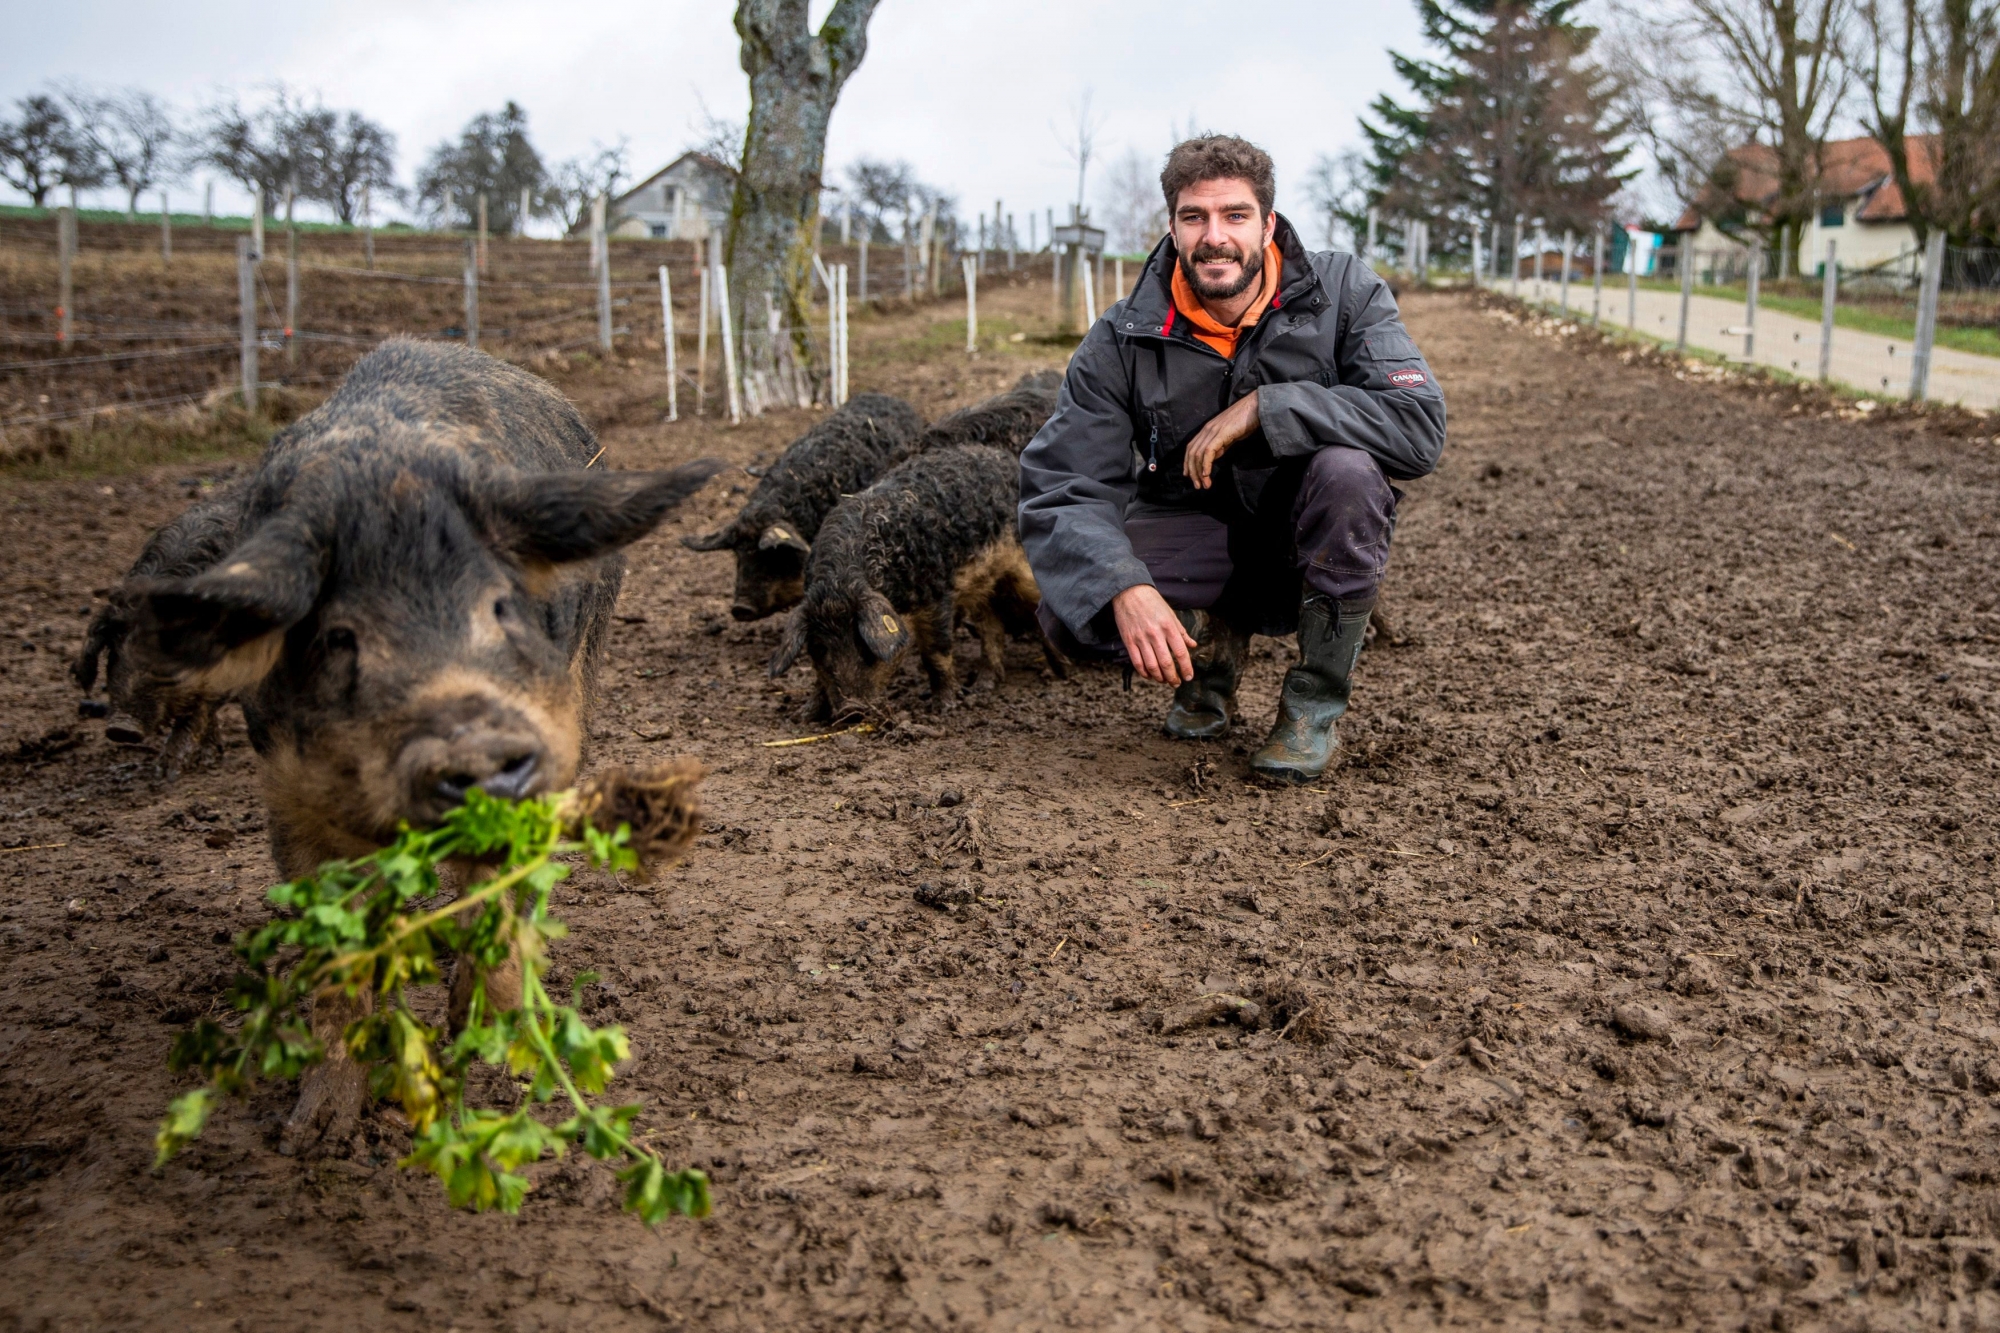 Longirod, mardi 27 novembre 2018
Portrait de Victor Bovy, paysan bio à la ferme Pré Martin avec les cochons laineux à Longirod

© Sigfredo Haro Portrait Victor Bovy, Longirod